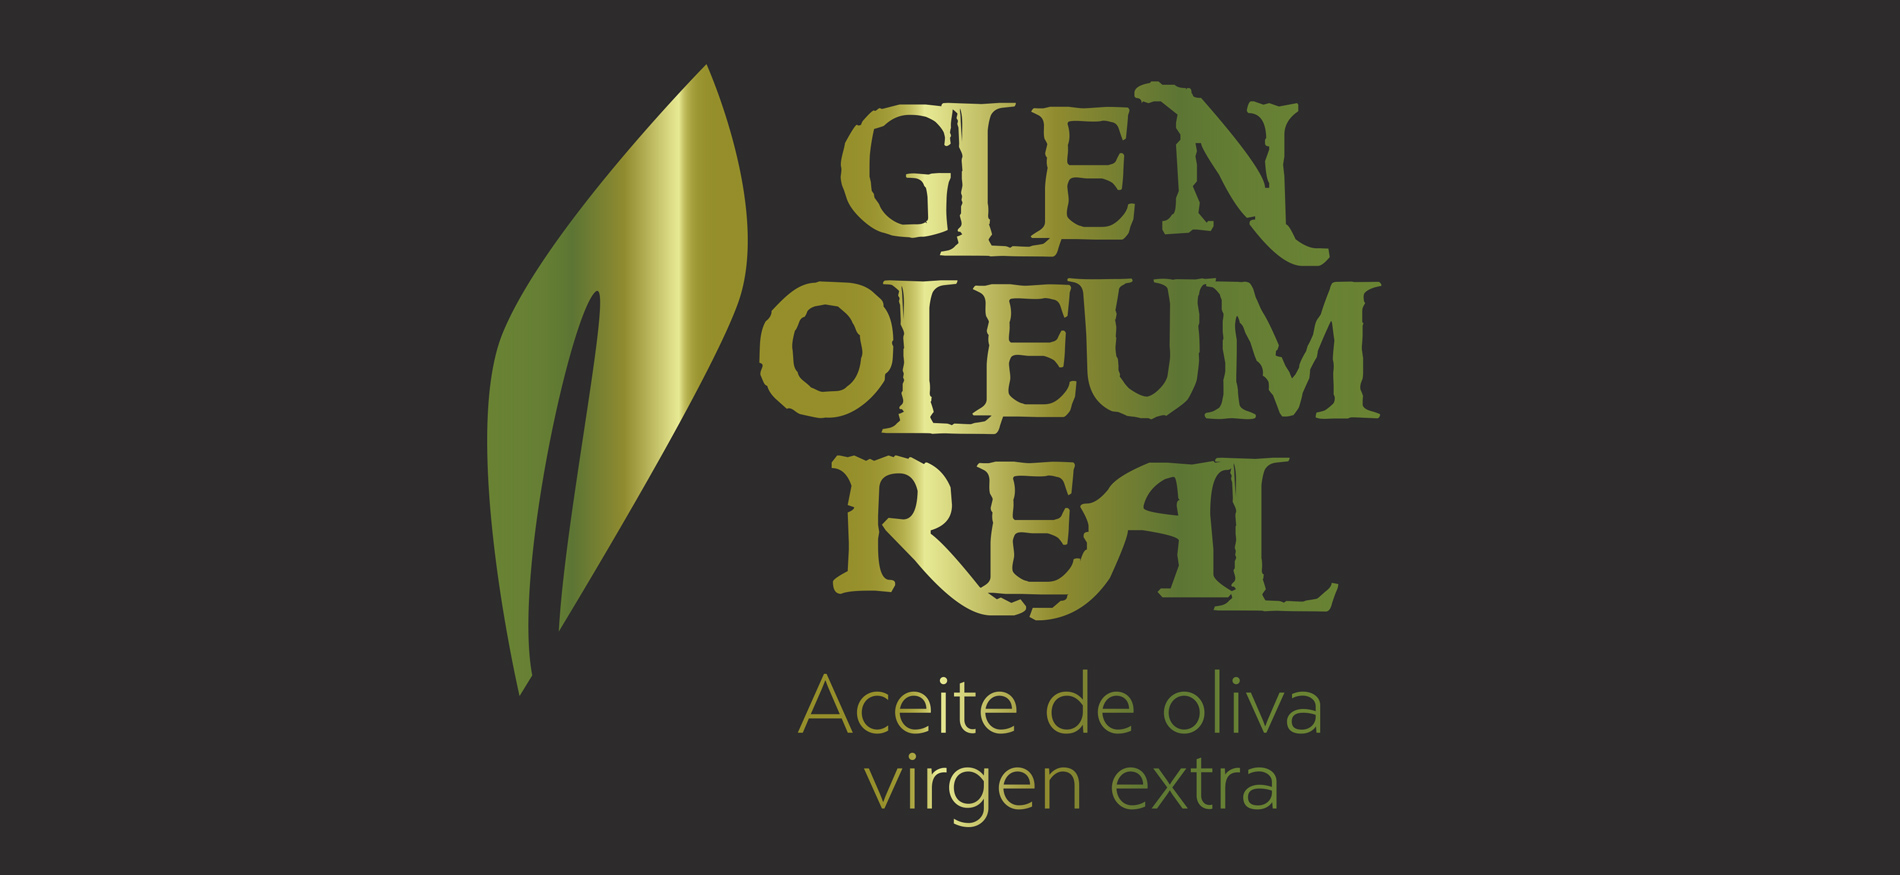 Diseño gráfico y creativo de etiquetas de aceite de oliva virgen extra para la marca GLEN OLEUM REAL